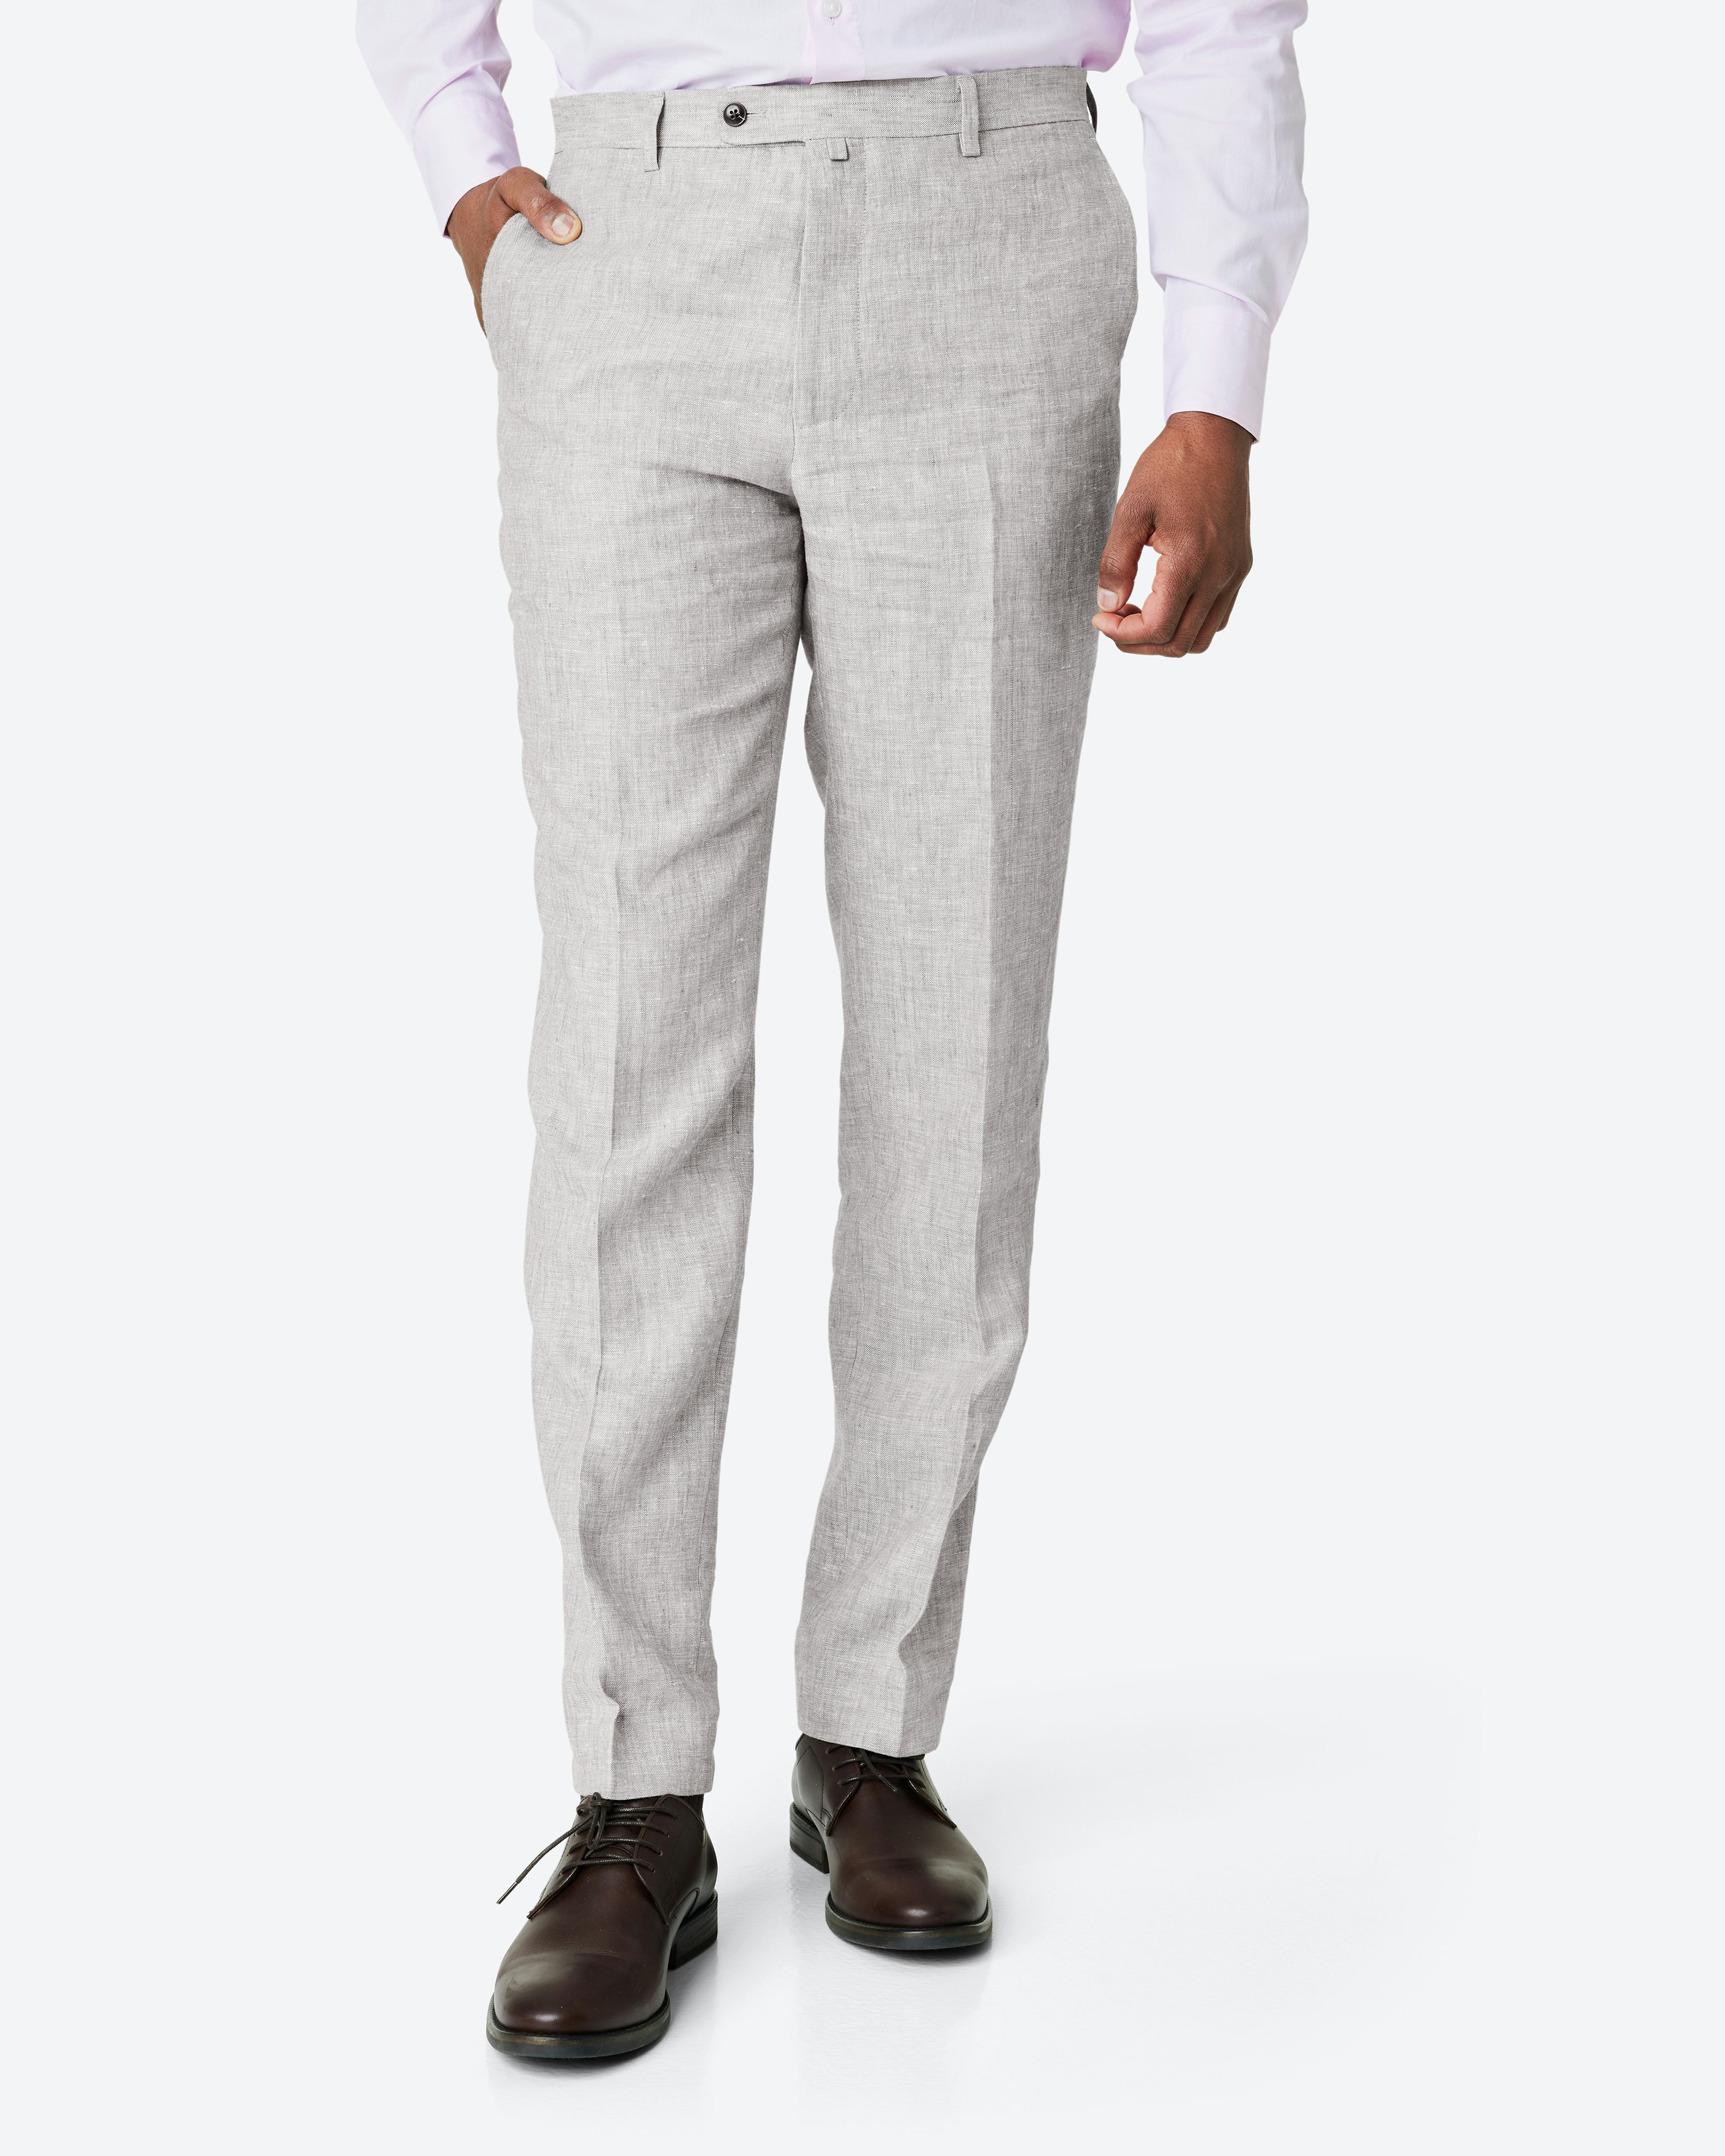 Glitz Grey Trouser Suit 1189